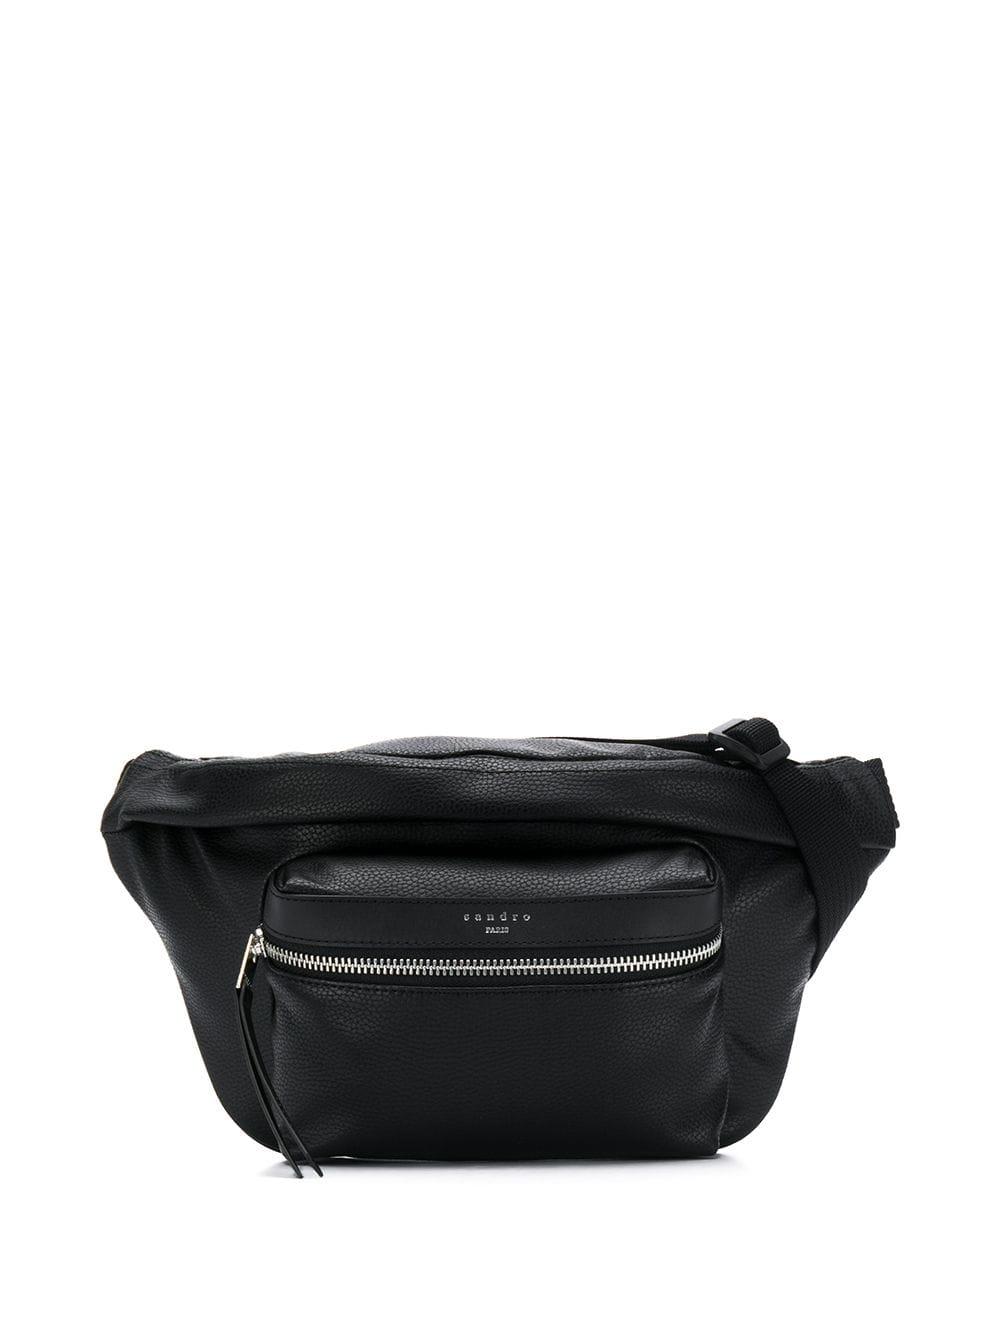 Sandro Logo Belt Bag in Black for Men - Lyst